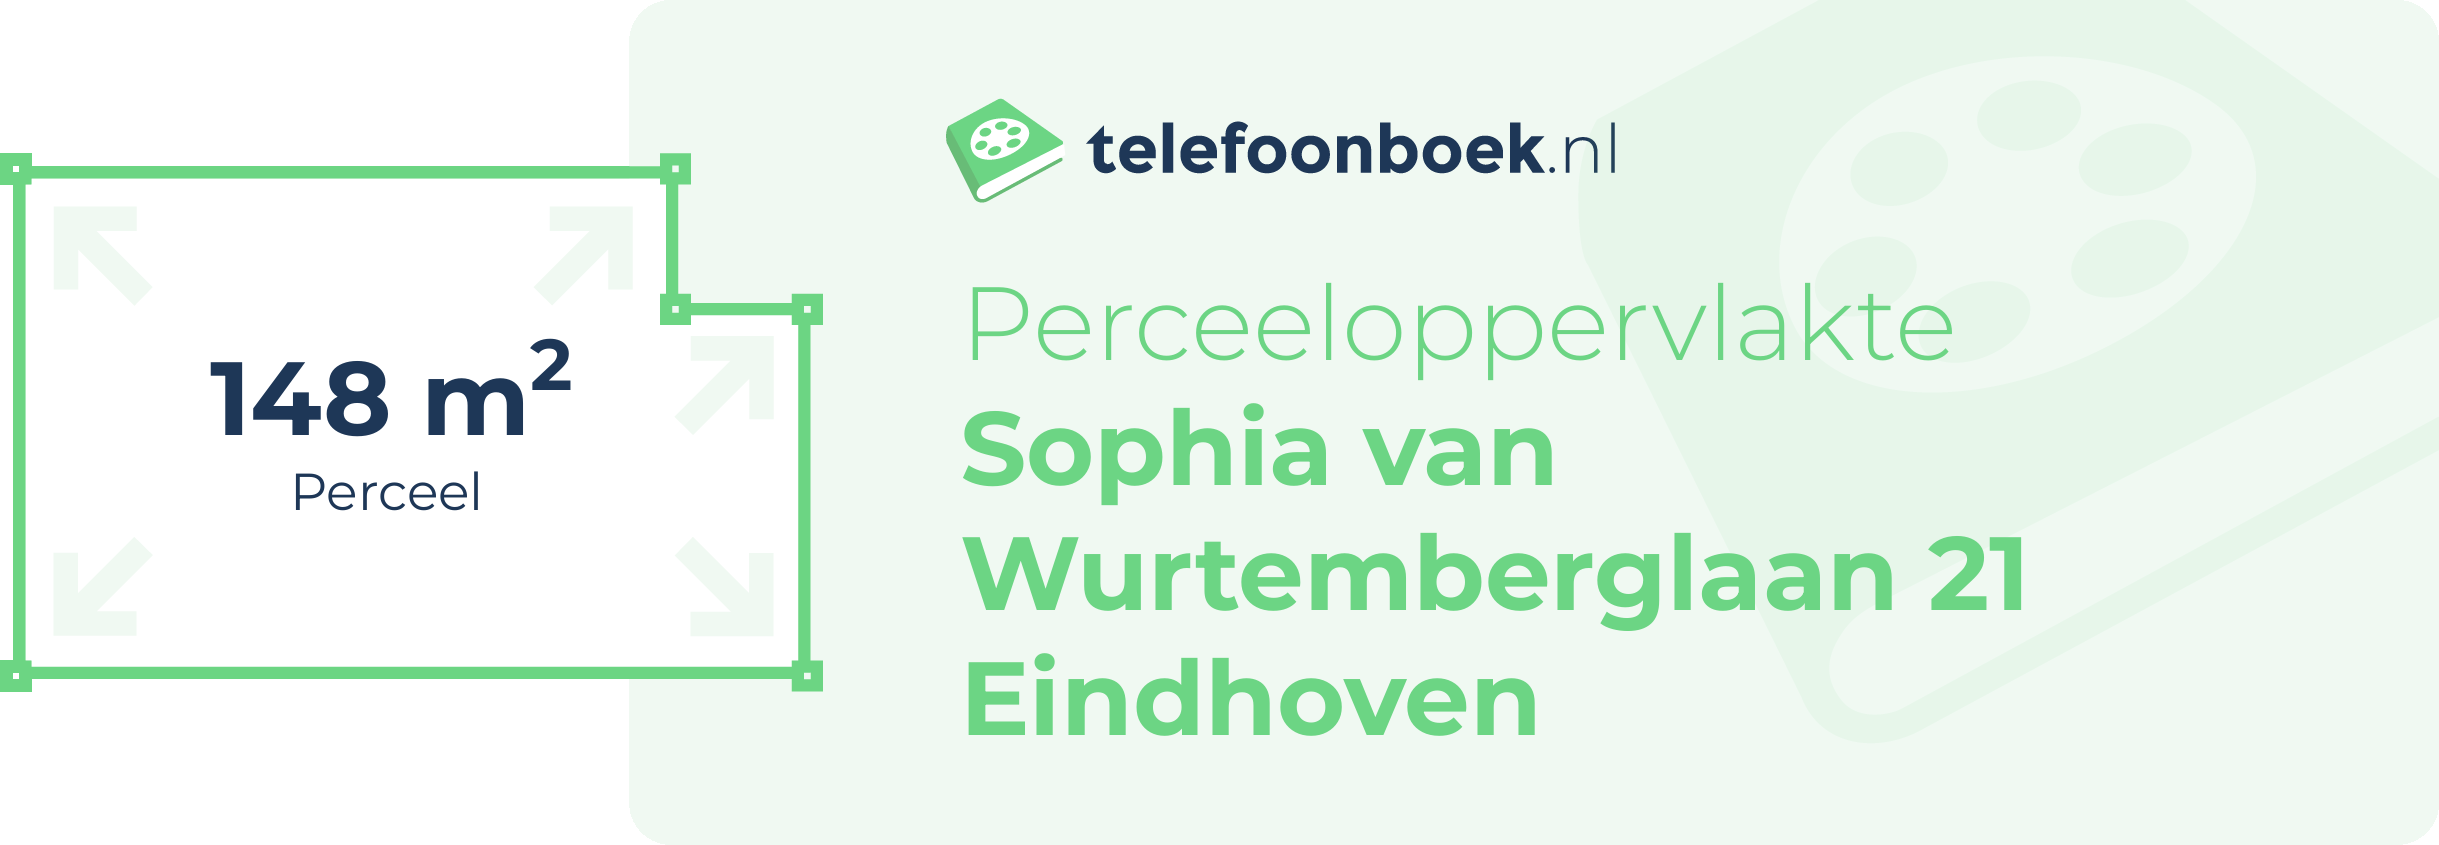 Perceeloppervlakte Sophia Van Wurtemberglaan 21 Eindhoven